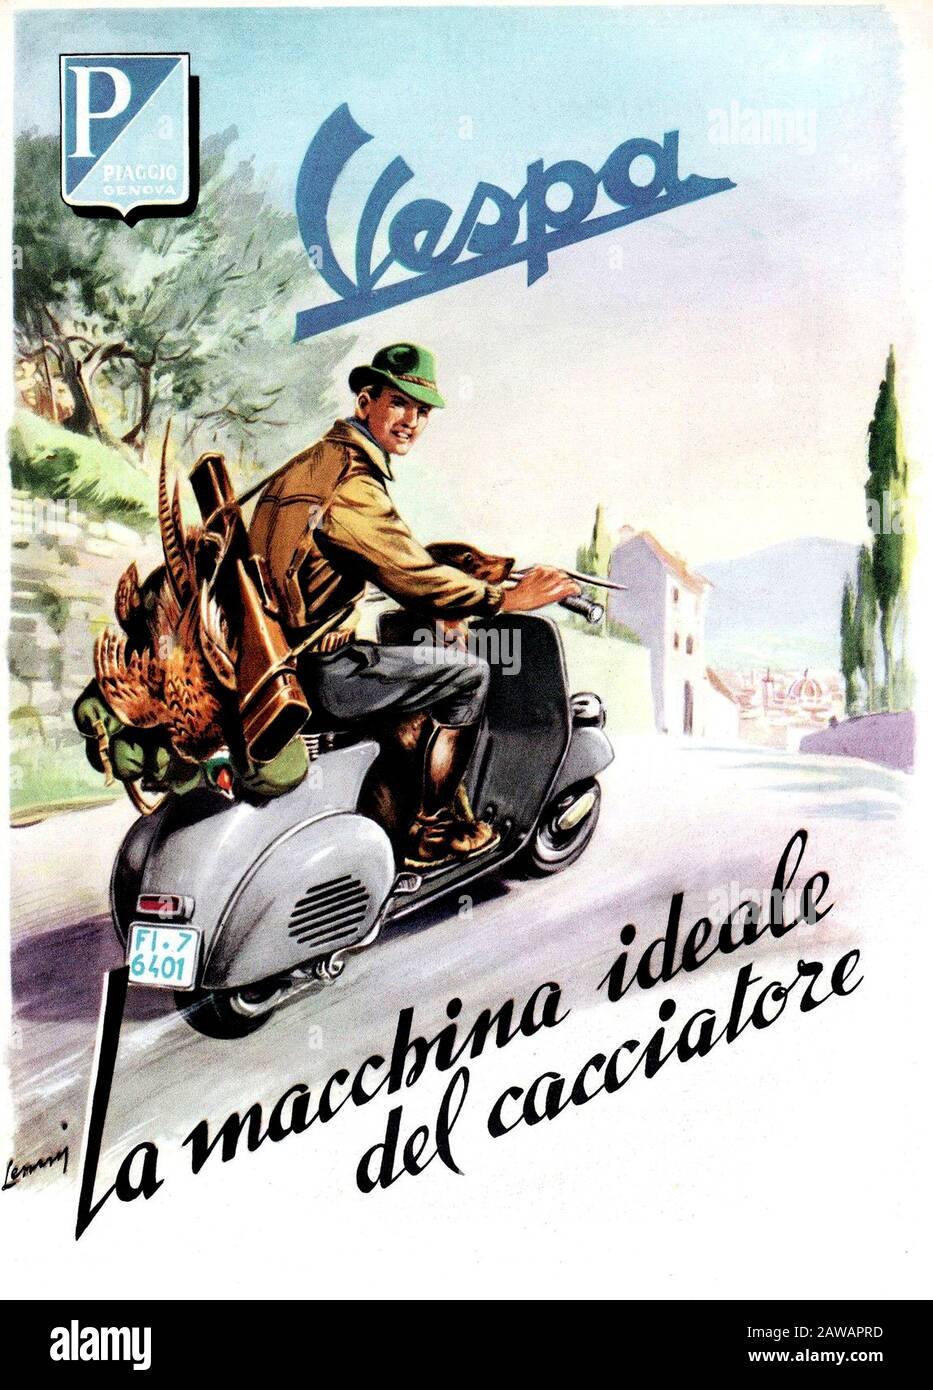 1954 , Genua , ITALIEN : Der gefeierte italienische Roller VESPA von  PIAGGIO Industry , Werbung - CACCIA - CACCIATORE - Jäger - INDUSTRIA -  INDUSTRIA Stockfotografie - Alamy